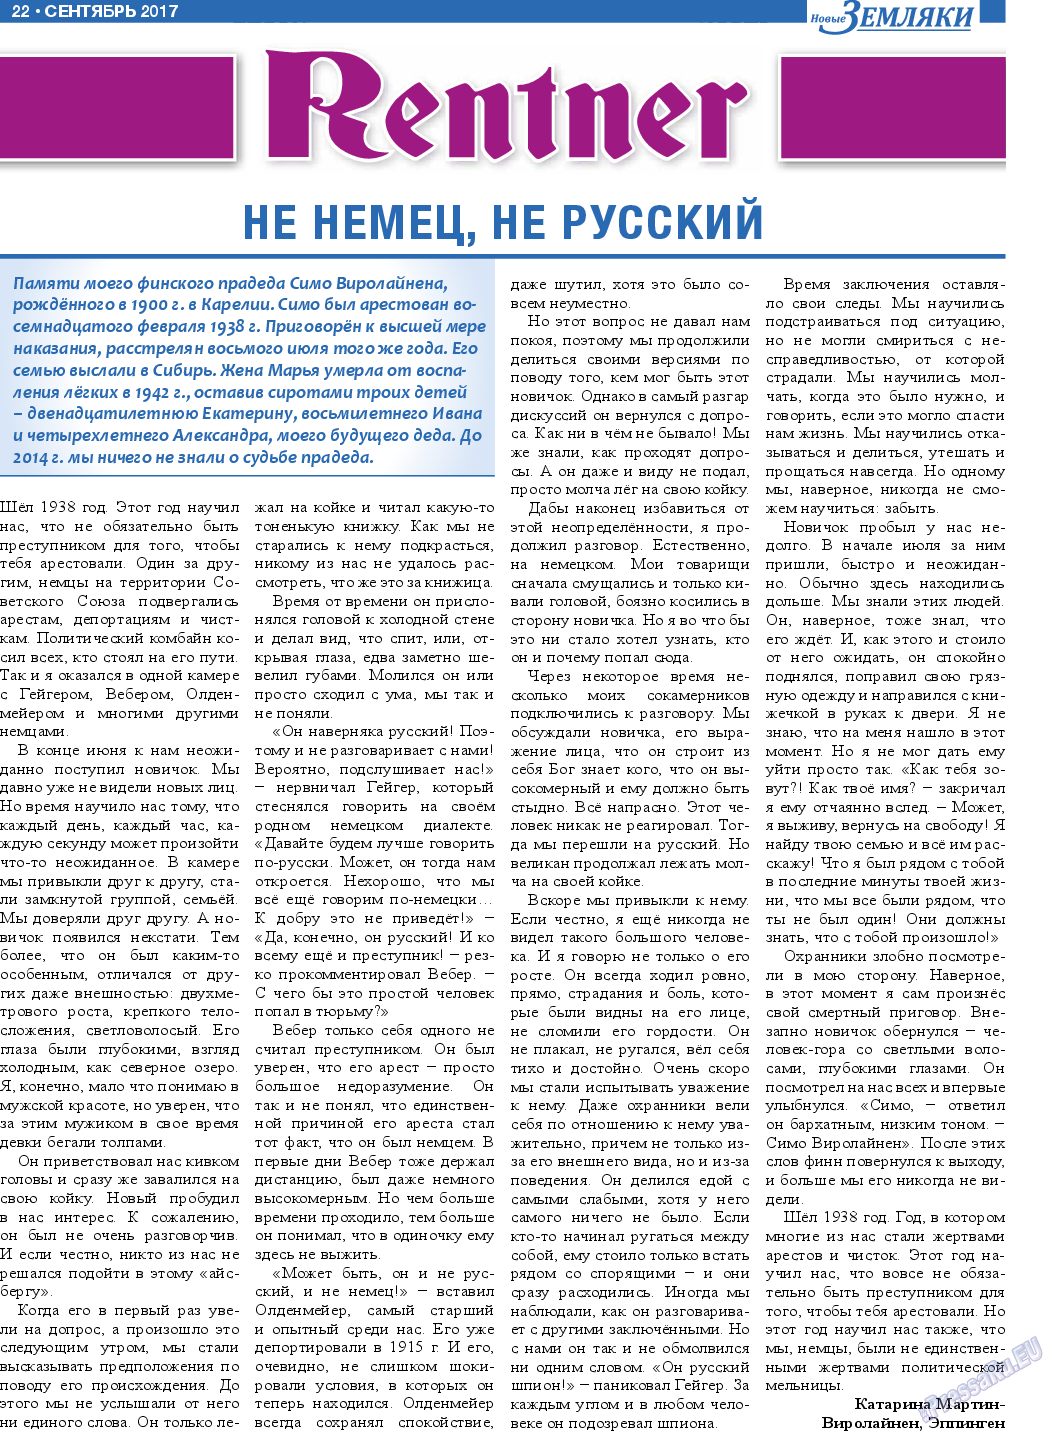 Новые Земляки, газета. 2017 №9 стр.22